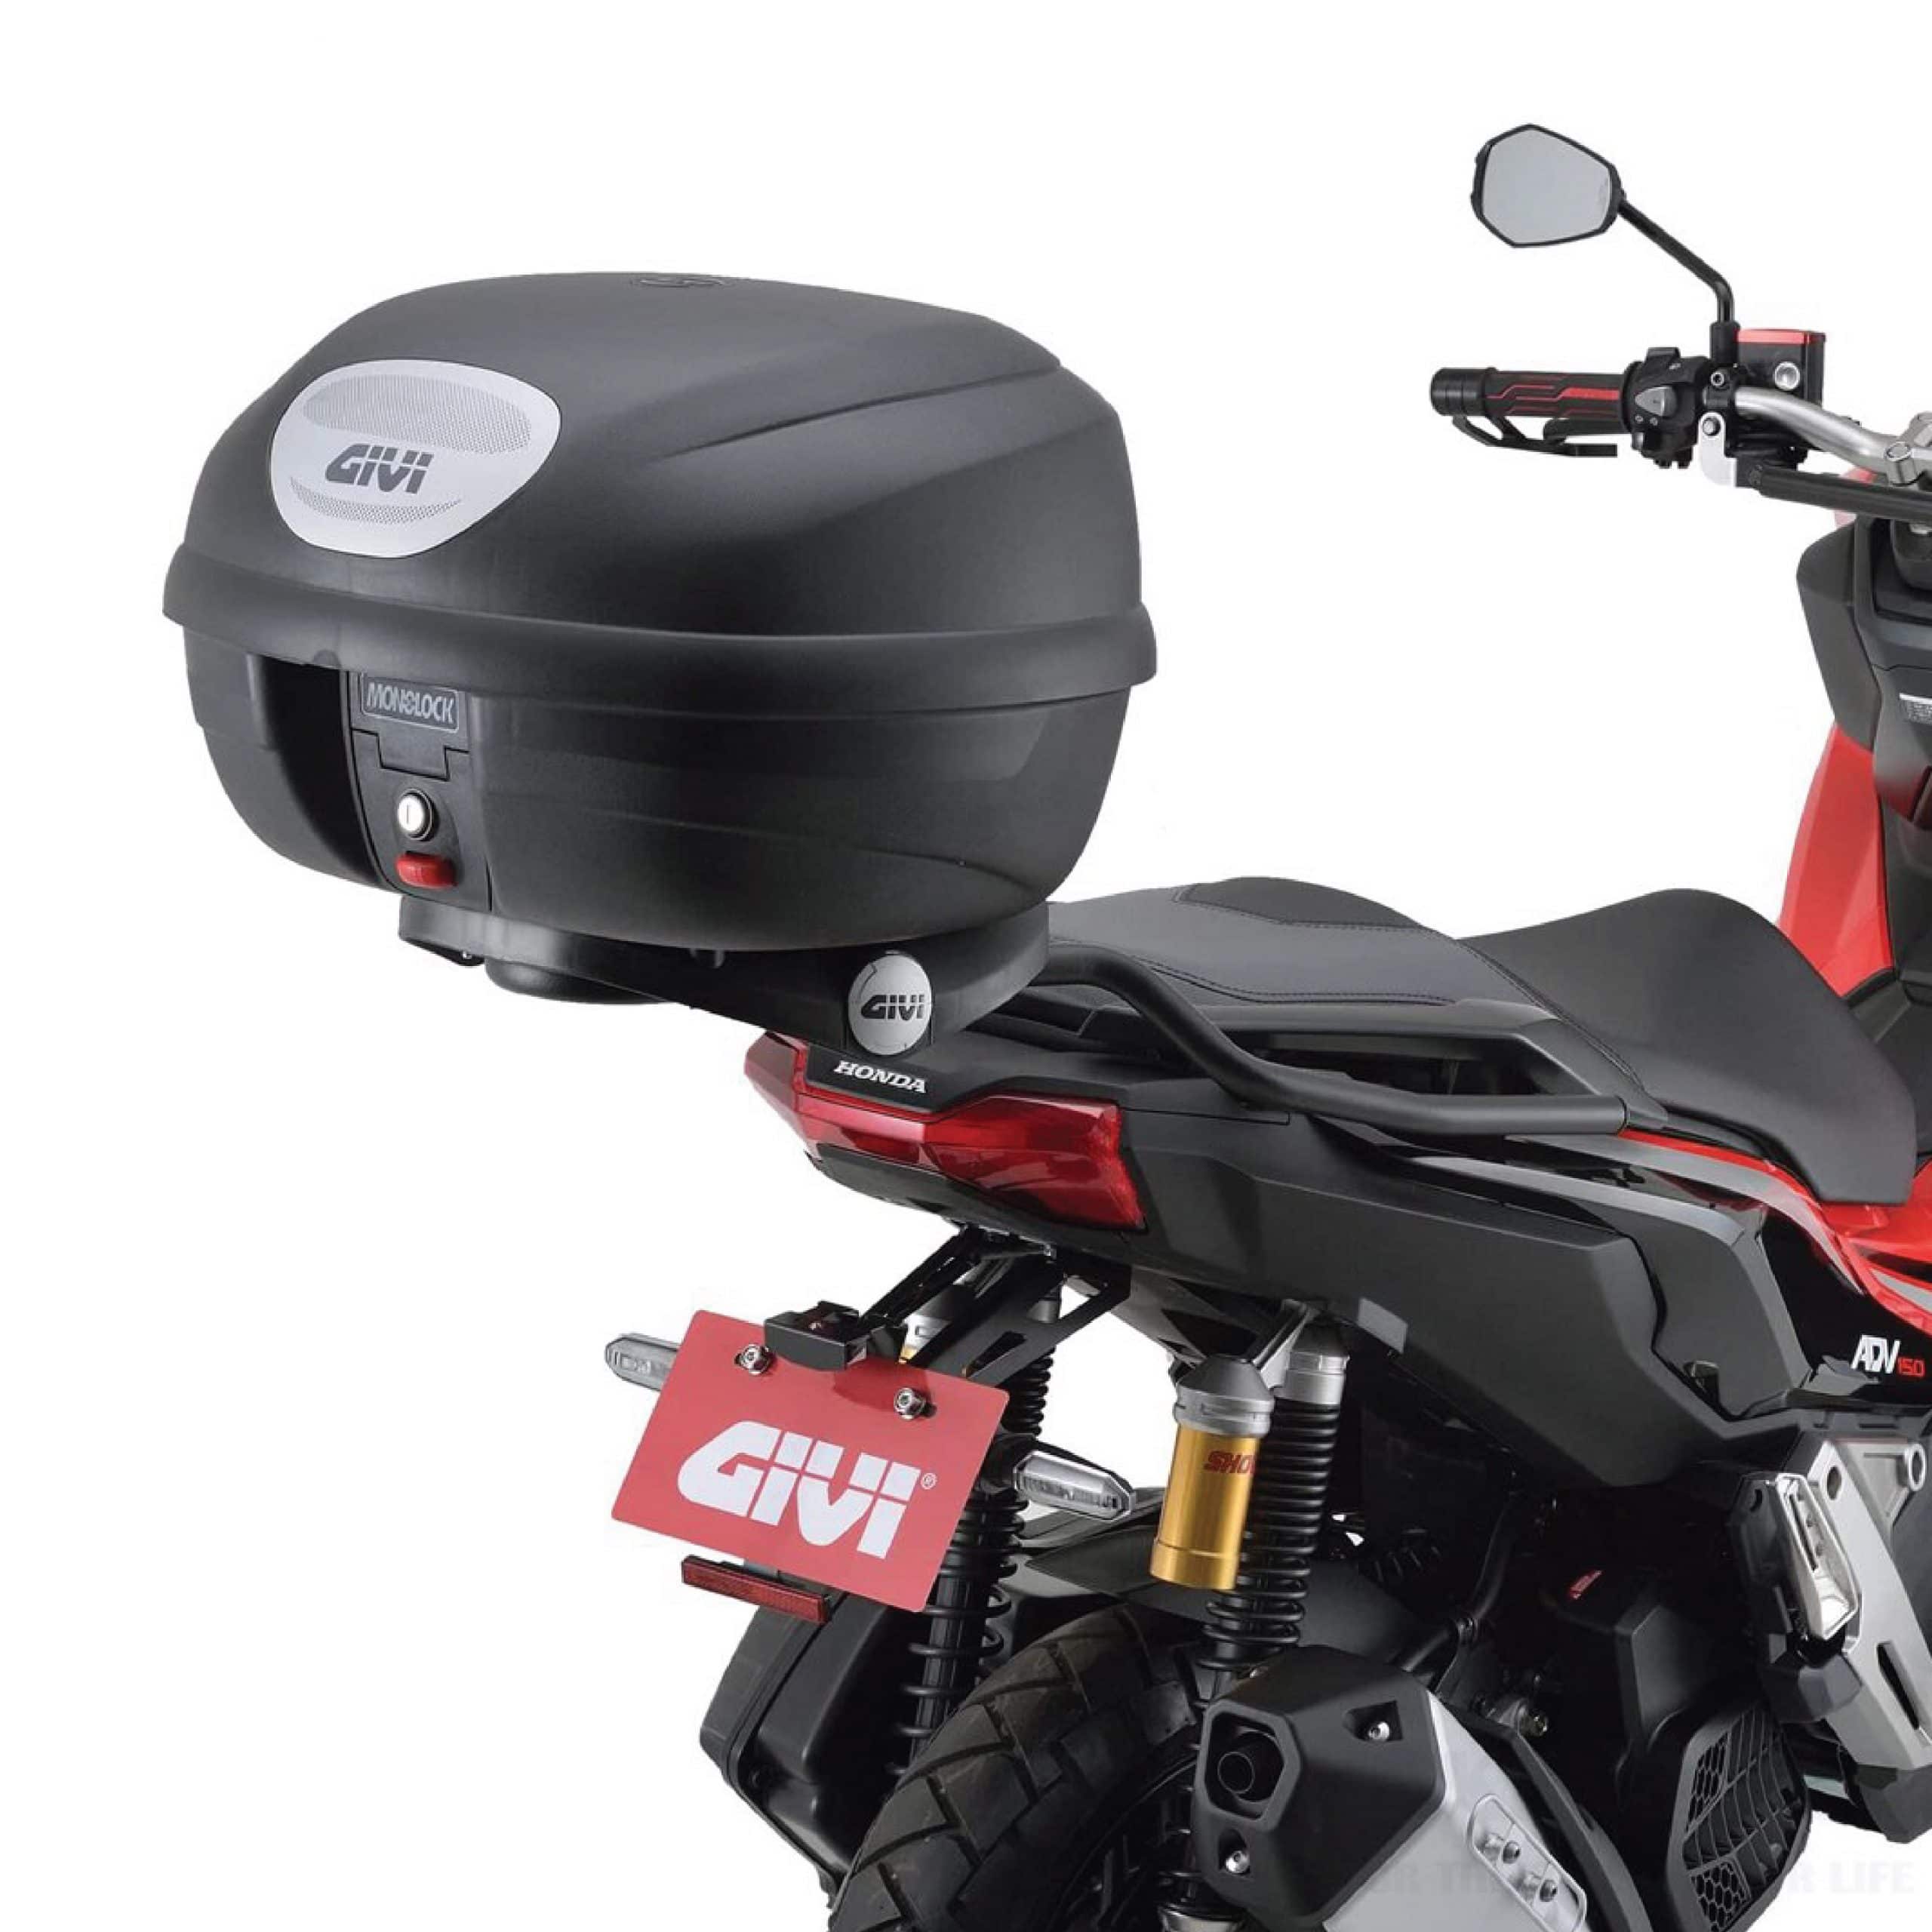 GIVI E33NX Top case Mounted on Honda scooter